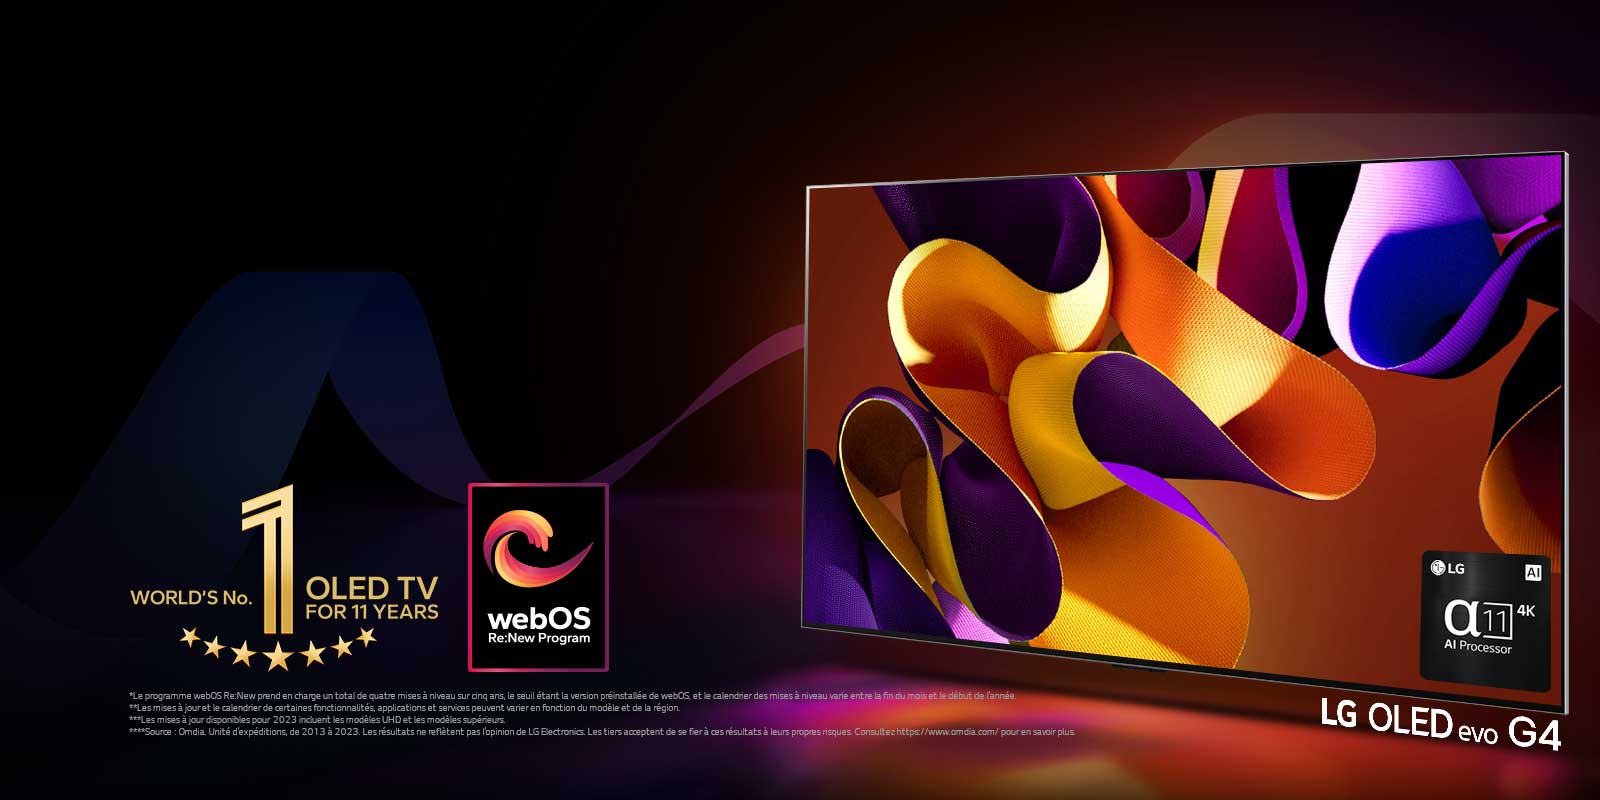 LG OLED evo TV G4 avec une illustration abstraite et colorée à l’écran sur un fond noir avec de subtils tourbillons de couleurs. La lumière rayonne de l’écran, projetant des ombres colorées. Le processeur 4K alpha 11 AI se trouve dans le coin inférieur droit de l’écran du téléviseur. L’emblème « numéro 1 mondial TV OLED pour 11 ans » et le logo « webOS Re:New Program » sont dans l’image. Une clause de non-responsabilité stipule que : « Le programme webOS Re:New prend en charge un total de quatre mises à niveau sur cinq ans, le seuil étant la version préinstallée de webOS, et le calendrier des mises à niveau varie entre la fin du mois et le début de l’année. »  « Les mises à jour et le calendrier de certaines fonctionnalités, applications et services peuvent varier en fonction du modèle et de la région. »  « Les mises à jour disponibles pour 2023 incluent les modèles UHD et les modèles supérieurs. » « Source : Omdia. Unité d’expéditions, de 2013 à 2023. Les résultats ne reflètent pas l’opinion de LG Electronics. Les tiers acceptent de se fier à ces résultats à leurs propres risques. Consultez https://www.omdia.com/ pour en savoir plus. »